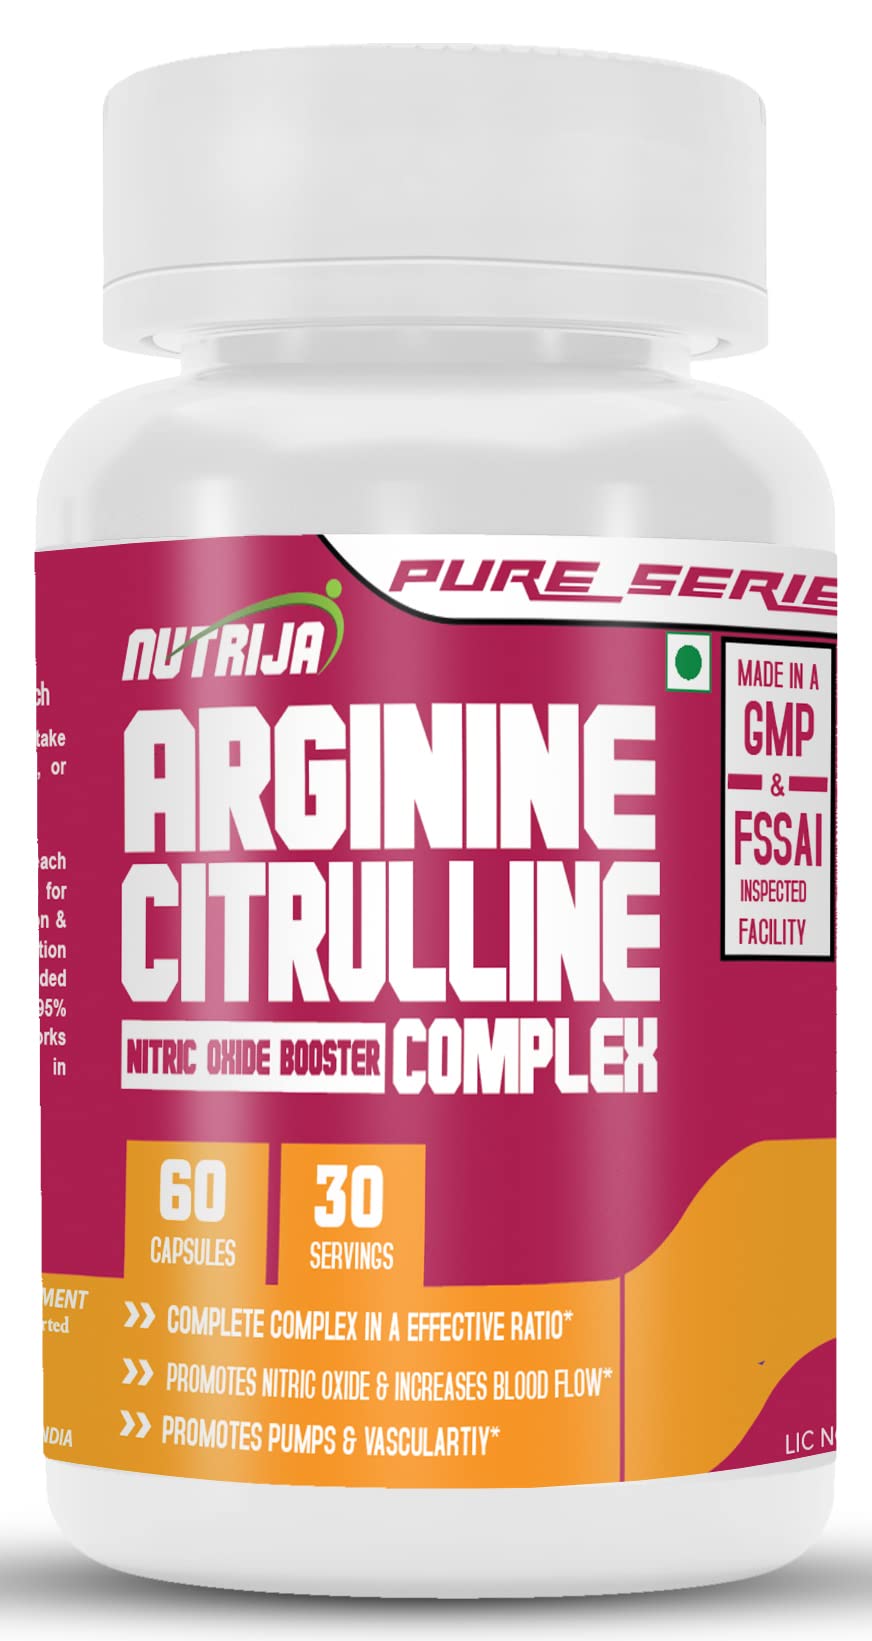 Nutrija L-ARGININE AND L-CITRULLINE COMPLEX? (60 Capsules)